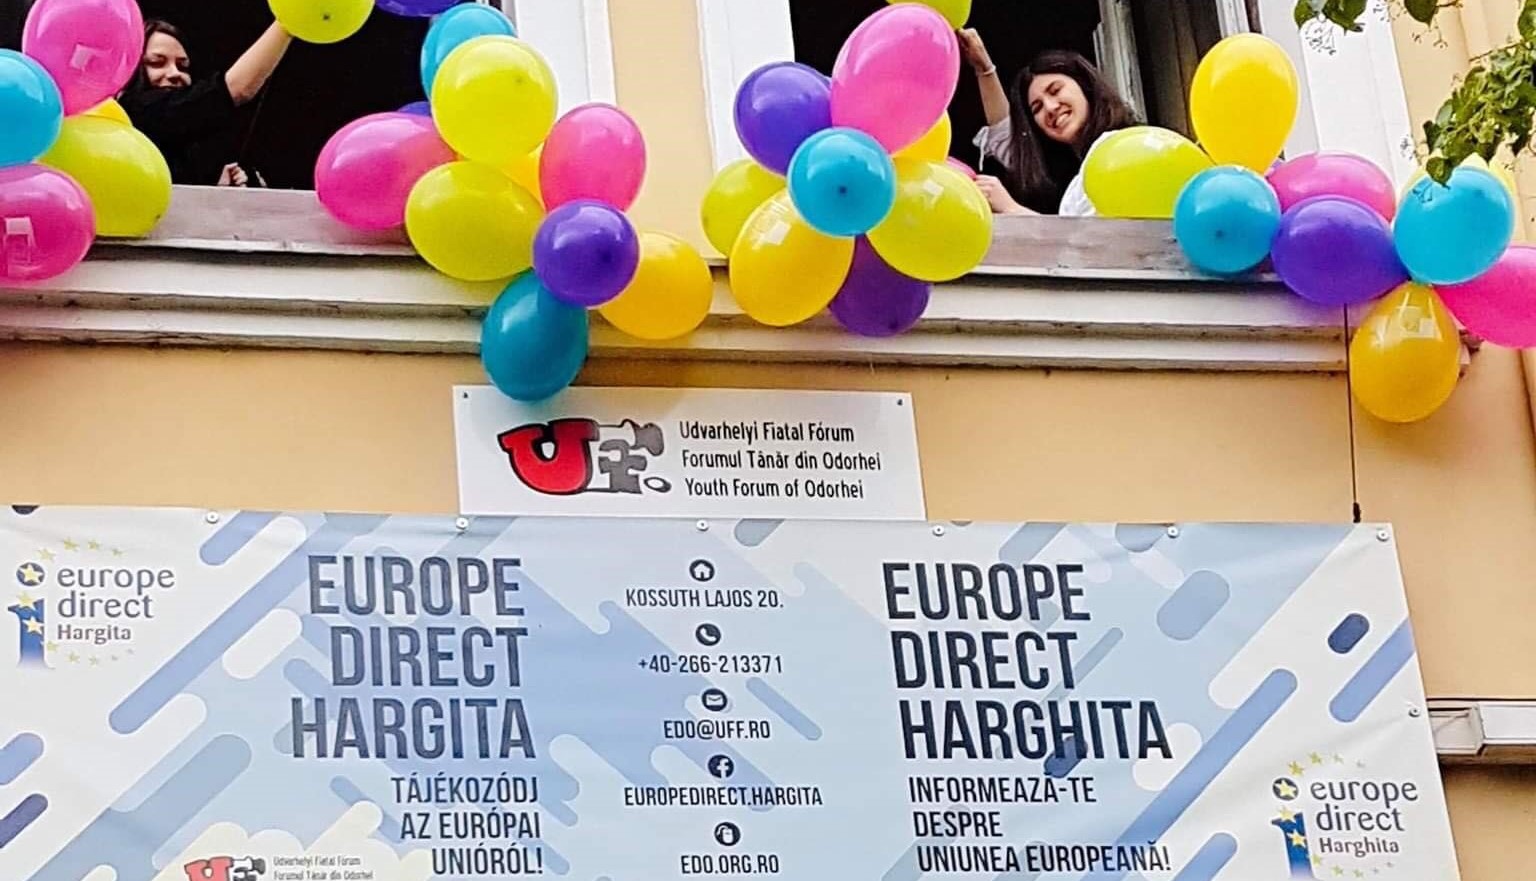 Europe Direct Hargita